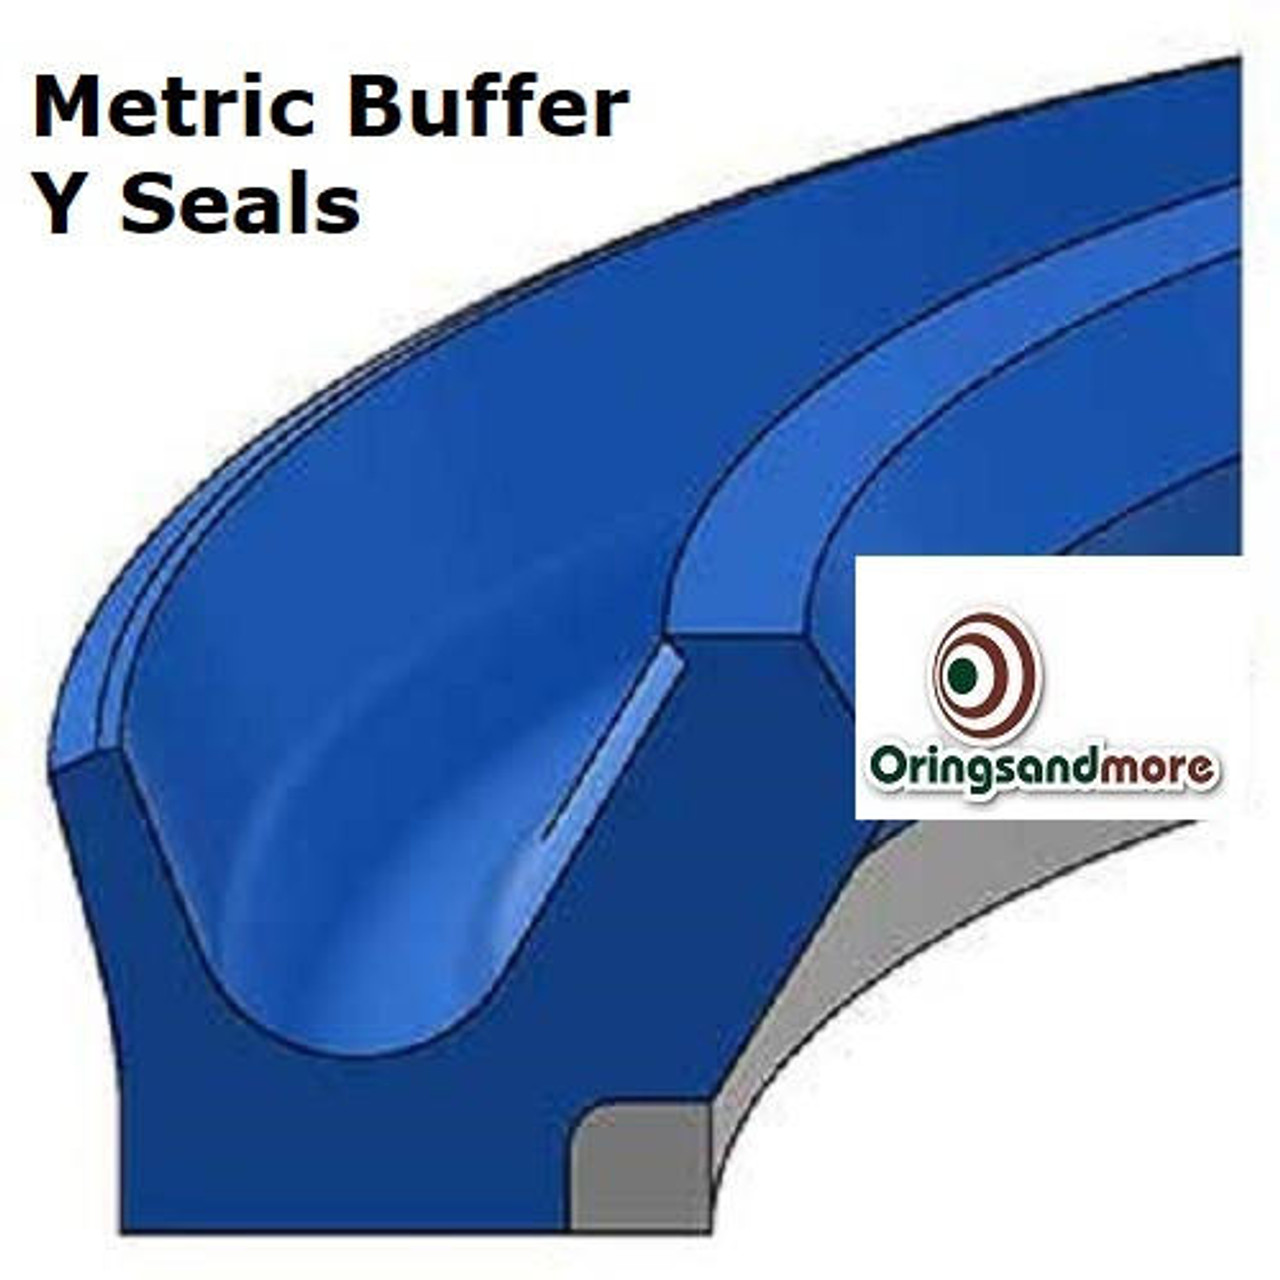 Metric Buffer Y Seals 120mm ID x 135.5mm OD x 5.9mm